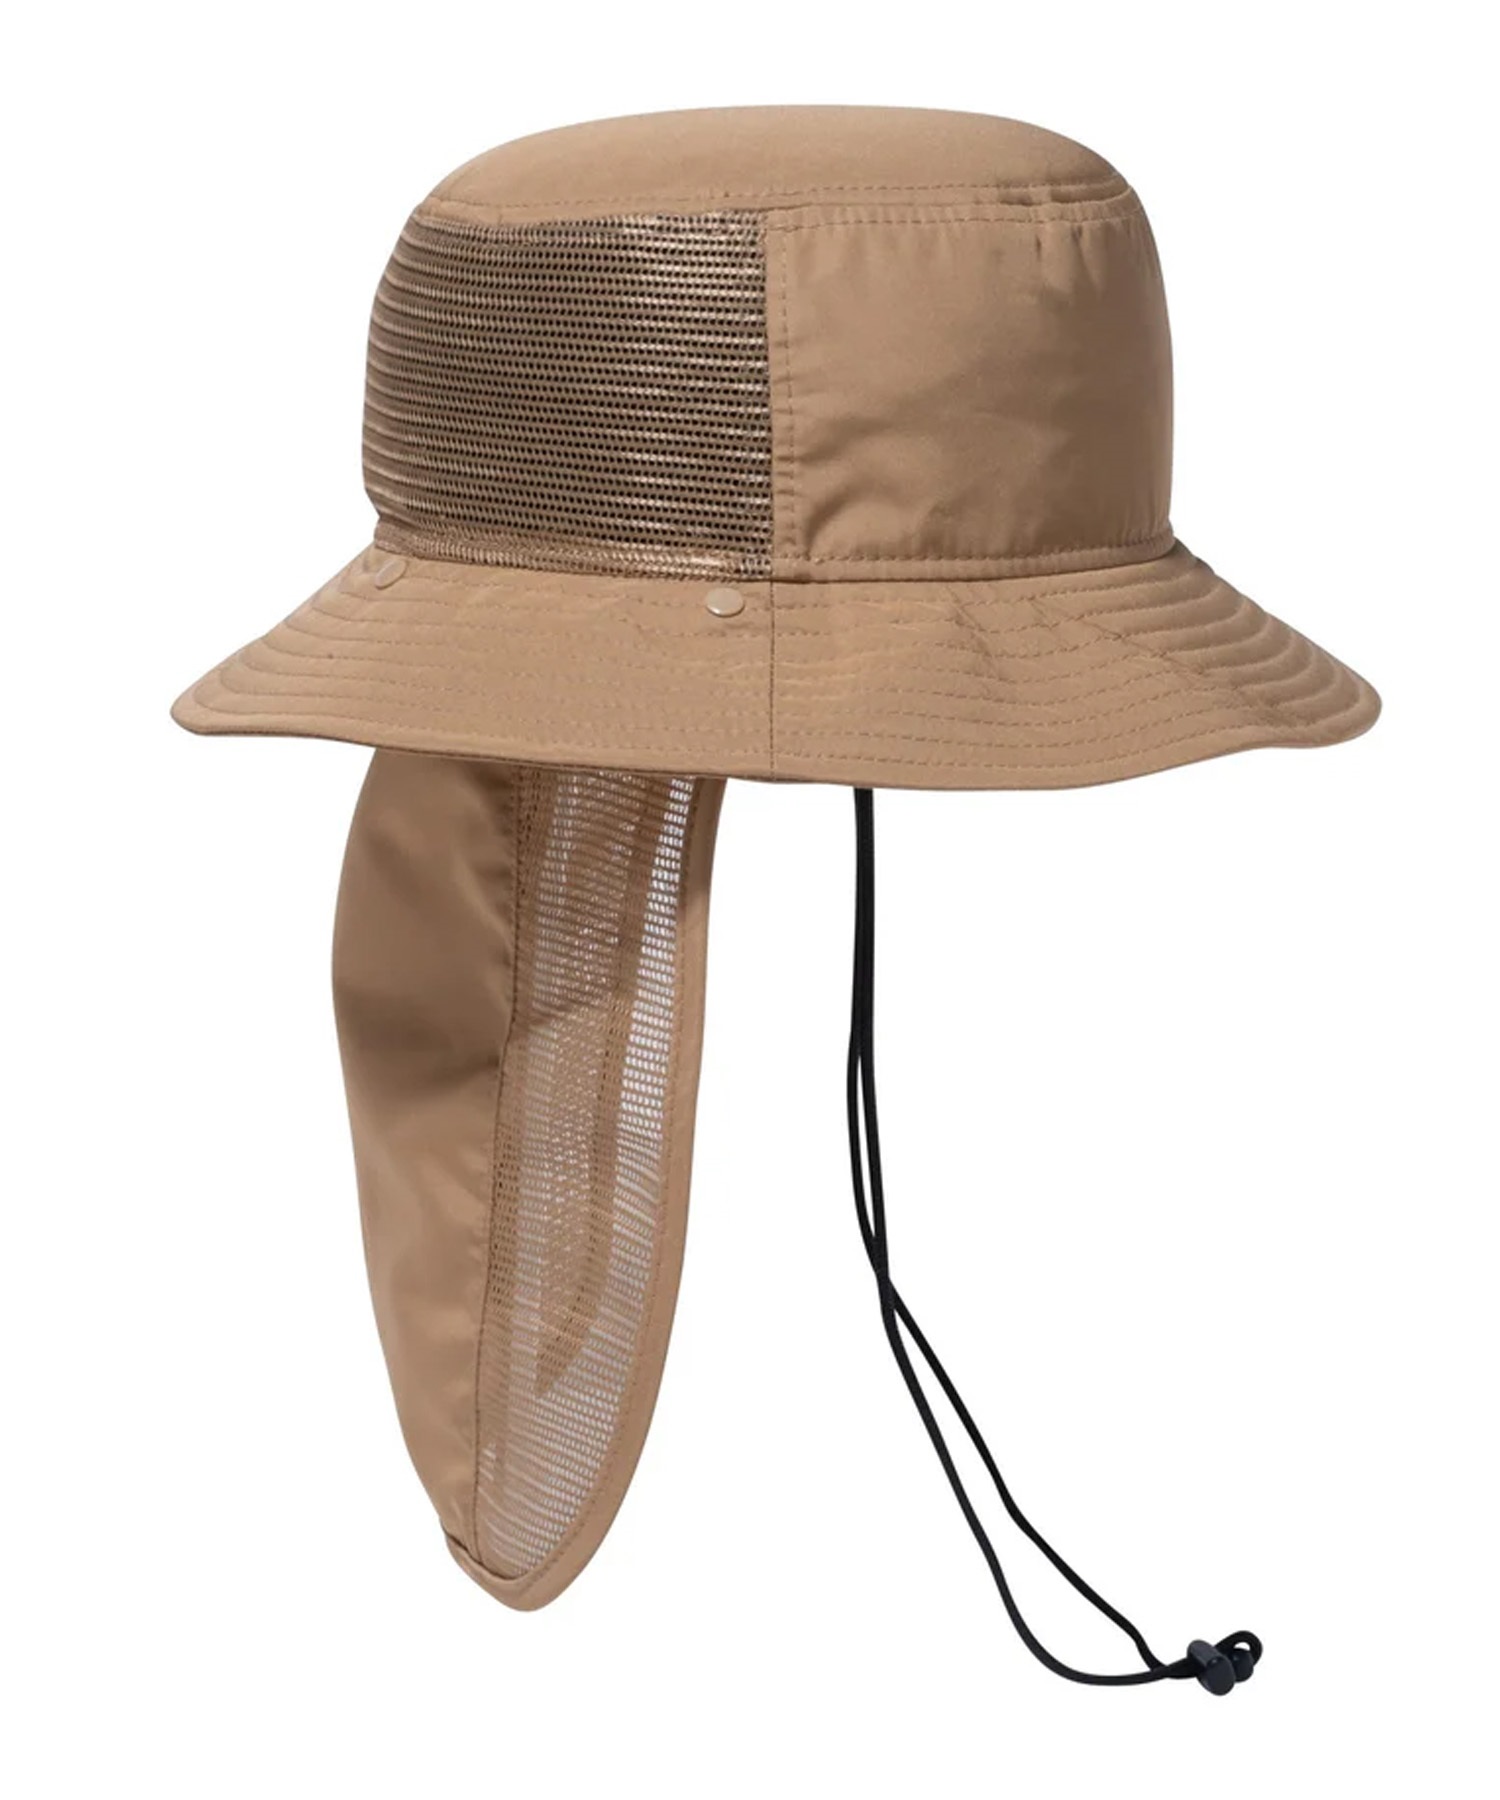 NEW ERA ニューエラ アドベンチャーライト サンシェード Tech Surf カーキ ハット 帽子 14110072(KHA-SM)